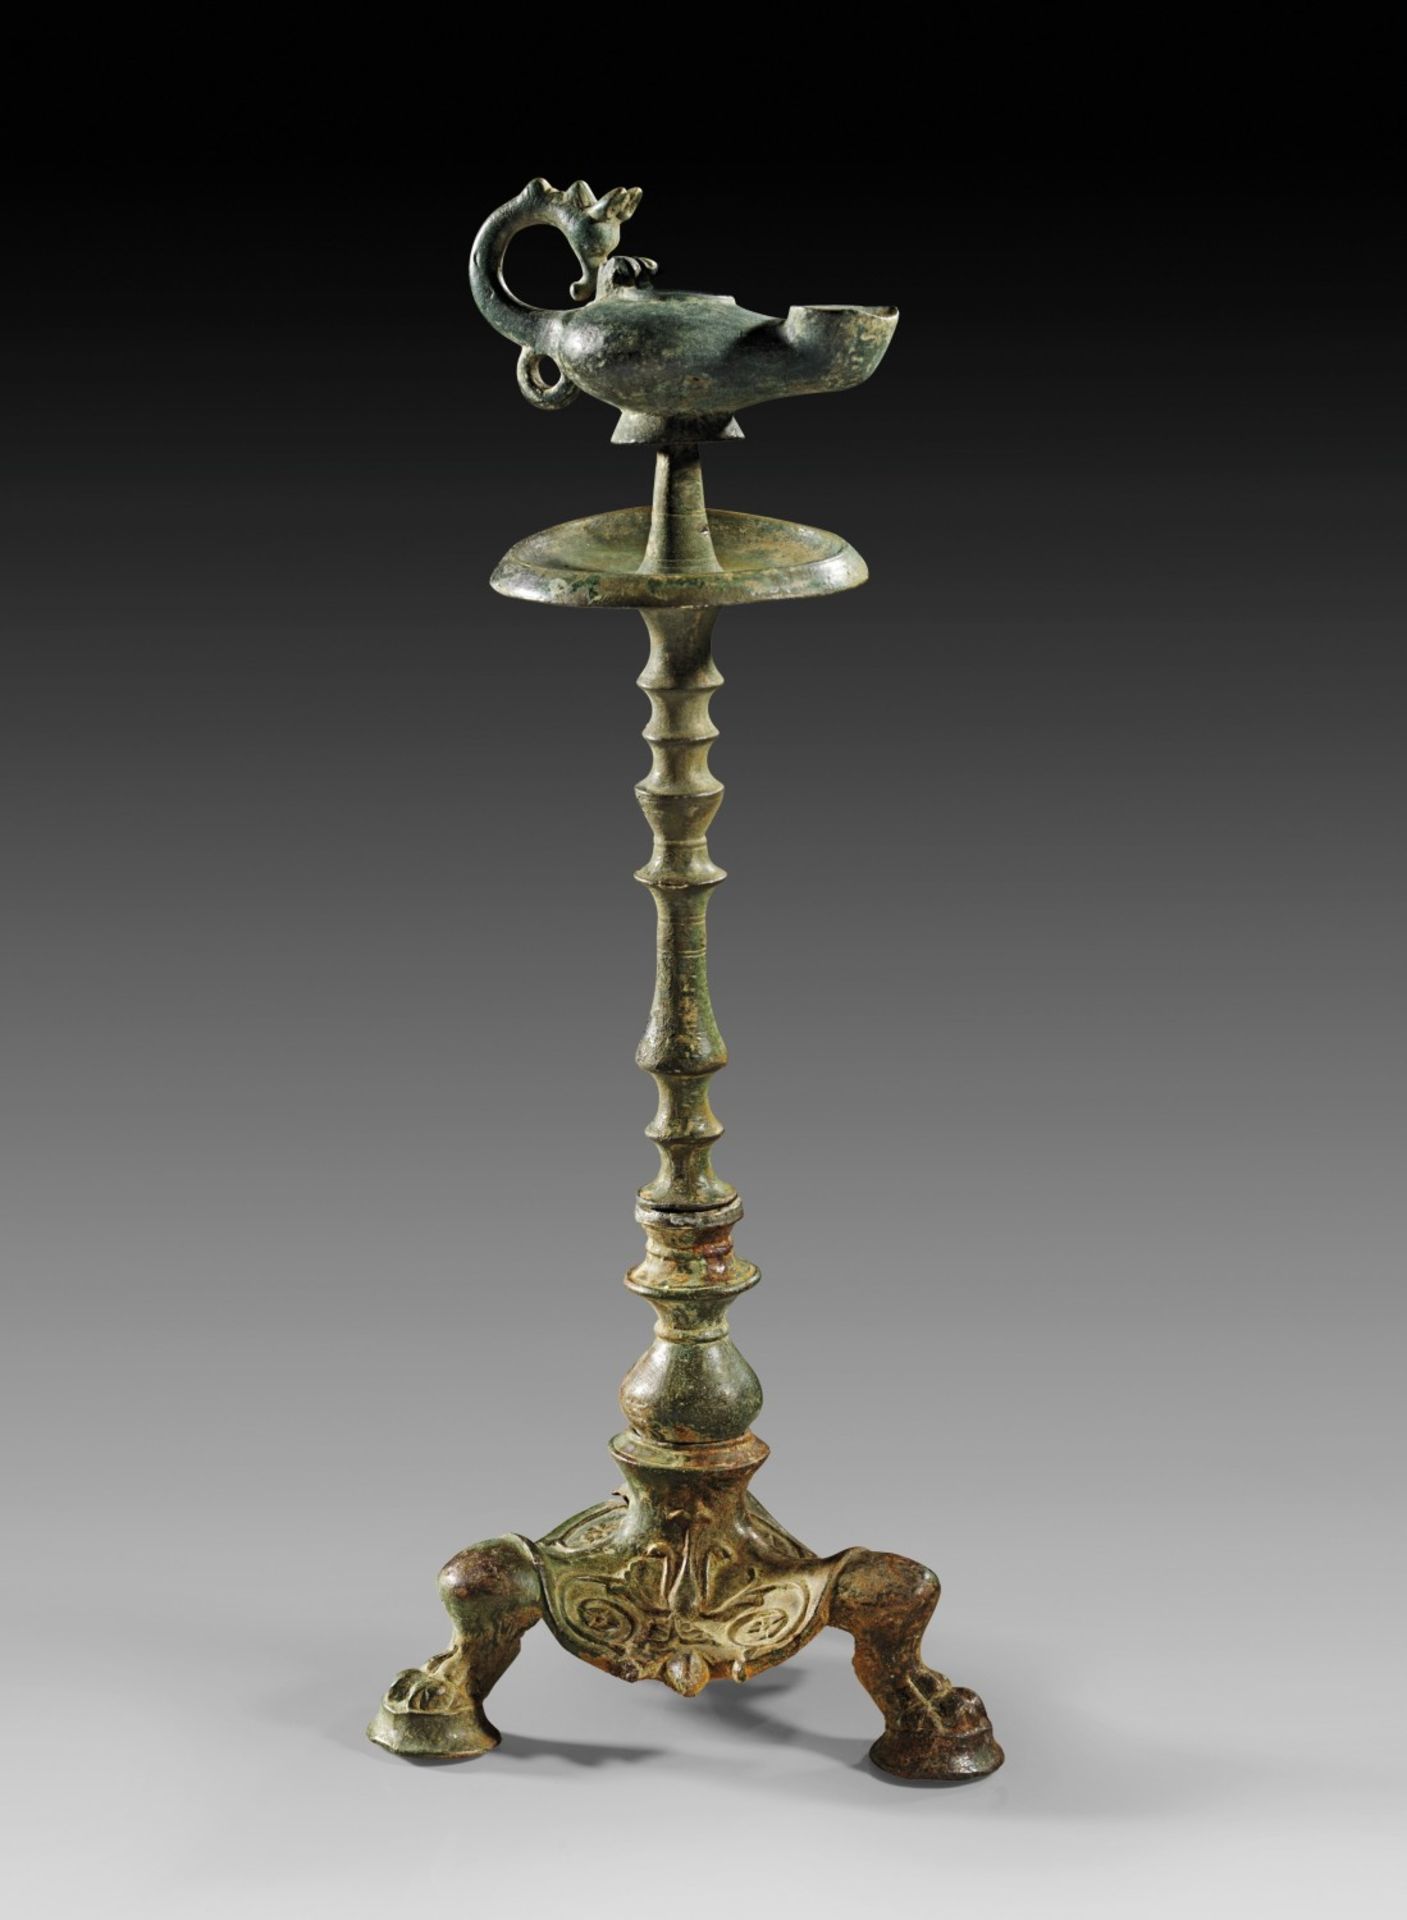 Bronzelampe mit Kandelaber. Frühbyzantinisch, 5. - 6. Jh. n. Chr. H Ständer 30,2cm, L Lampe 10,